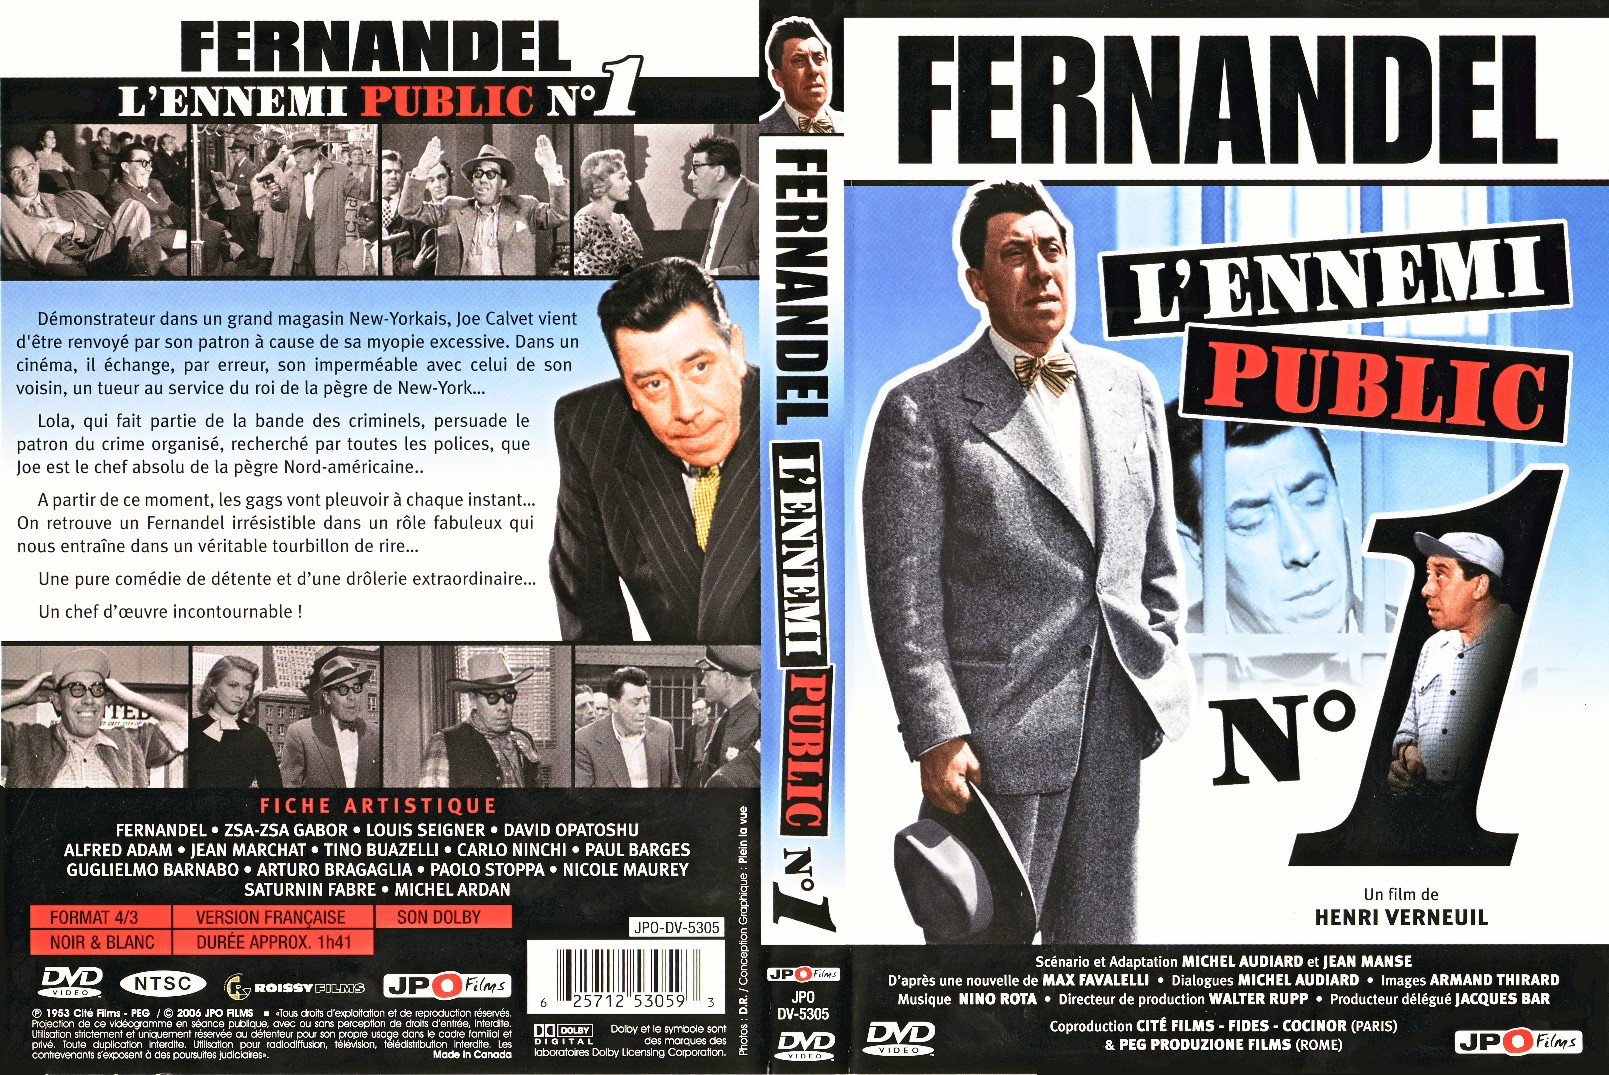 Fernandel Collectie (14 DvD's) - DvD 14 De laatste